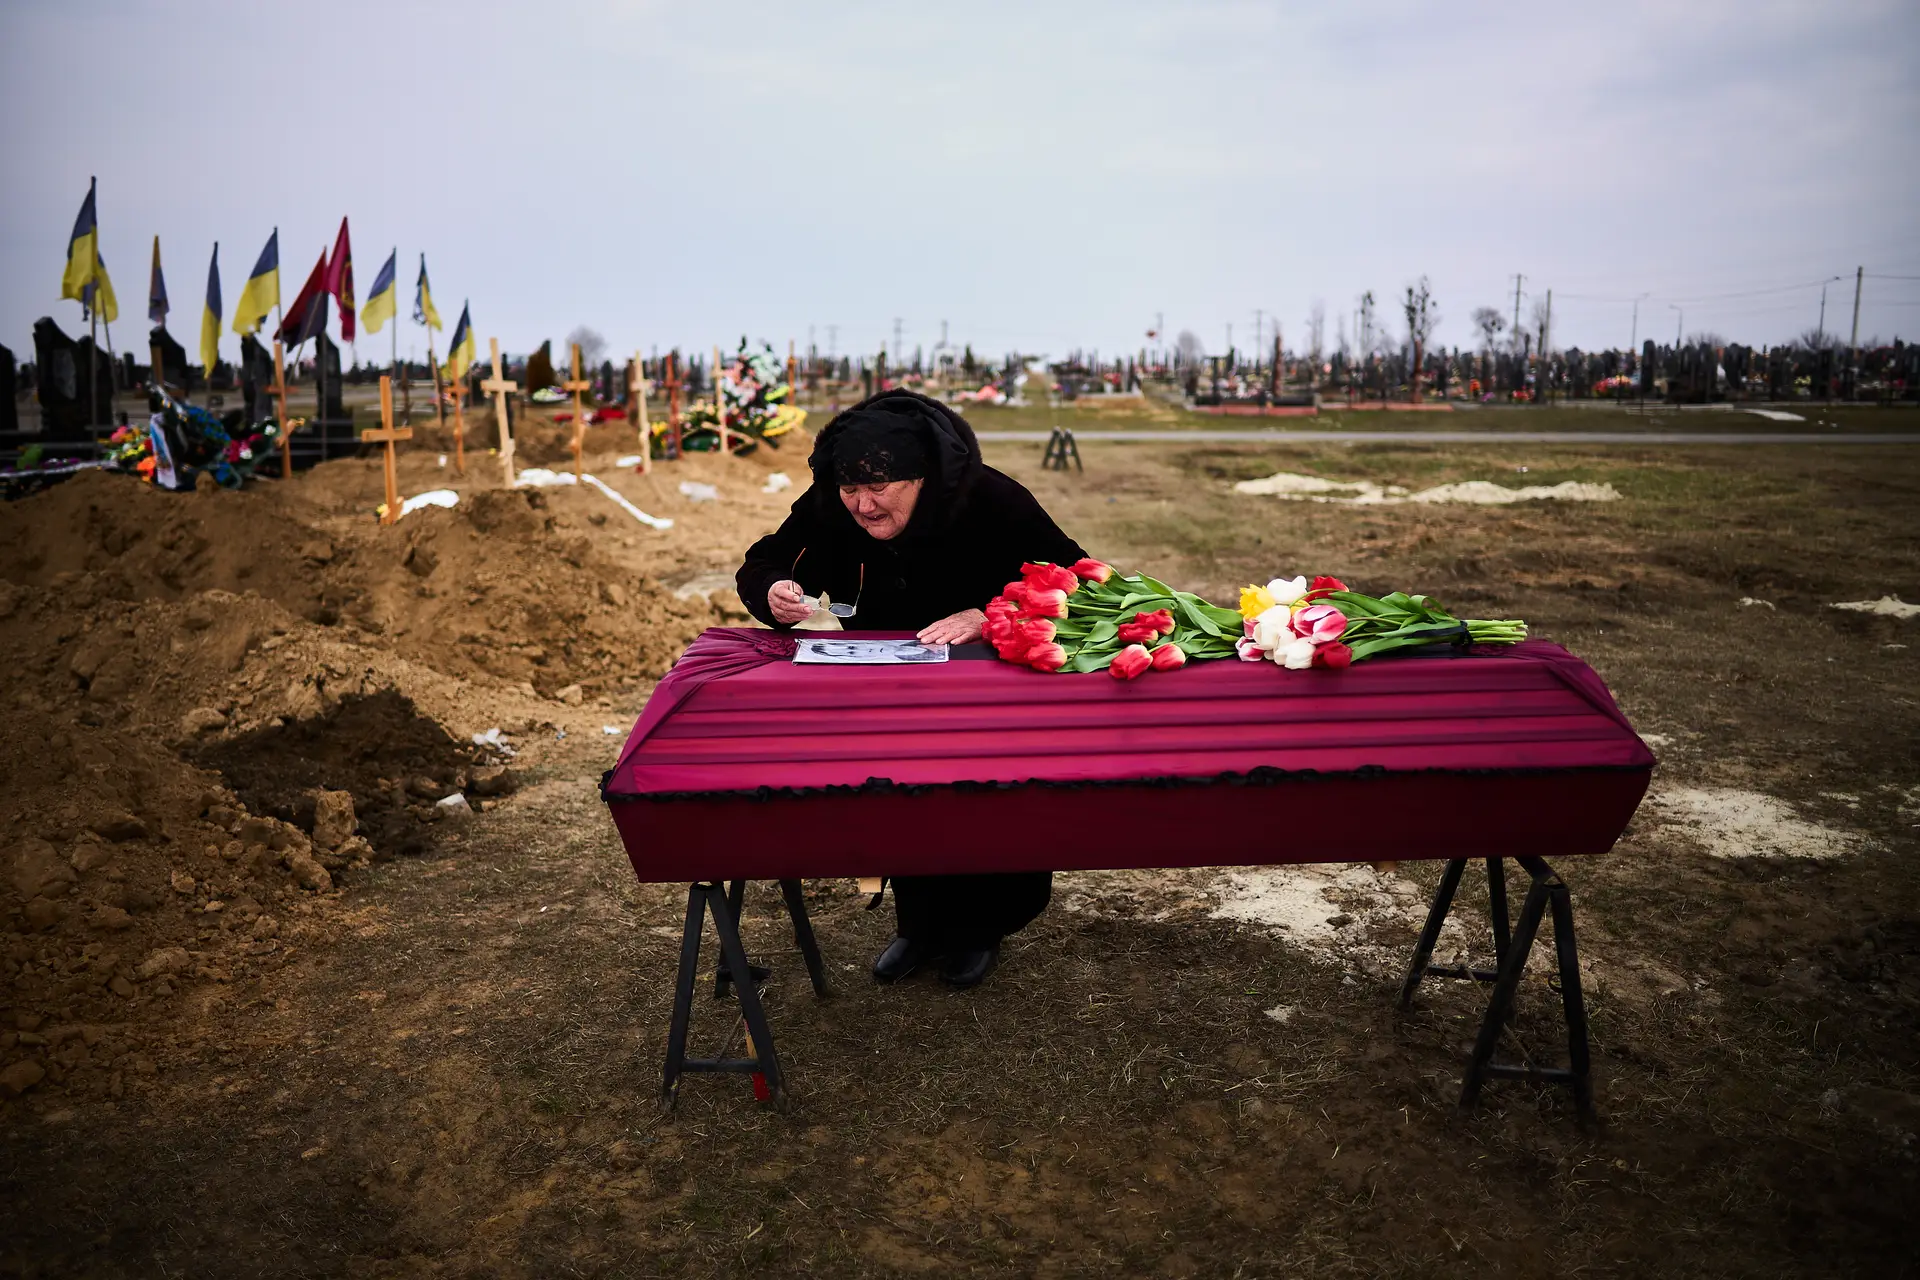 A avó de um soldado ucraniano despede- se do corpo do seu neto que foi morto durante os combates na linha de frente desta guerra. Kharkiv, Ucrânia, 30 de março de 2022